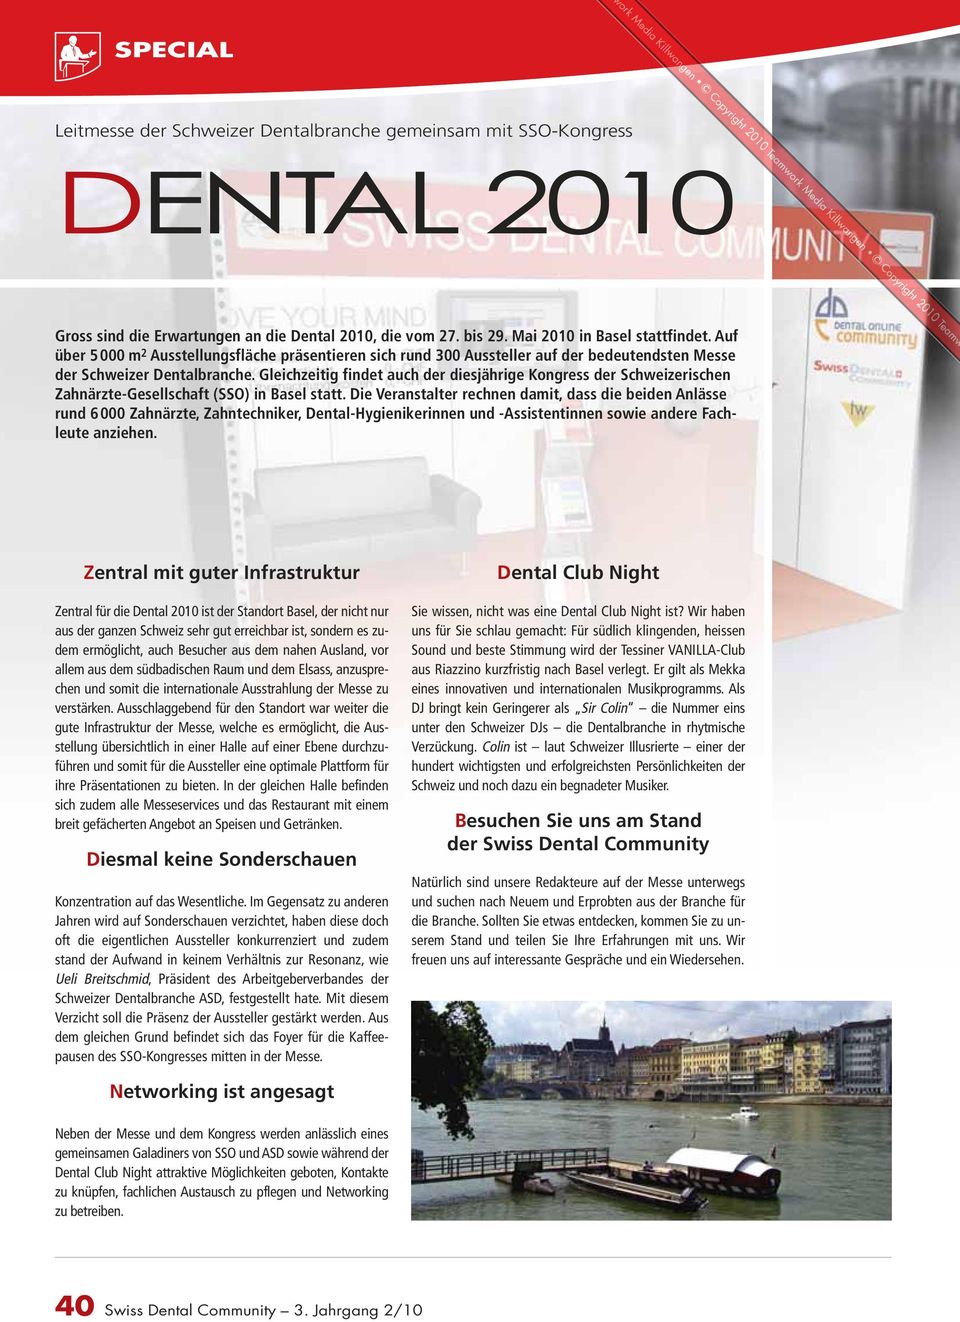 Gleichzeitig findet auch der diesjährige Kongress der Schweizerischen Zahnärzte-Gesellschaft (SSO) in Basel statt.